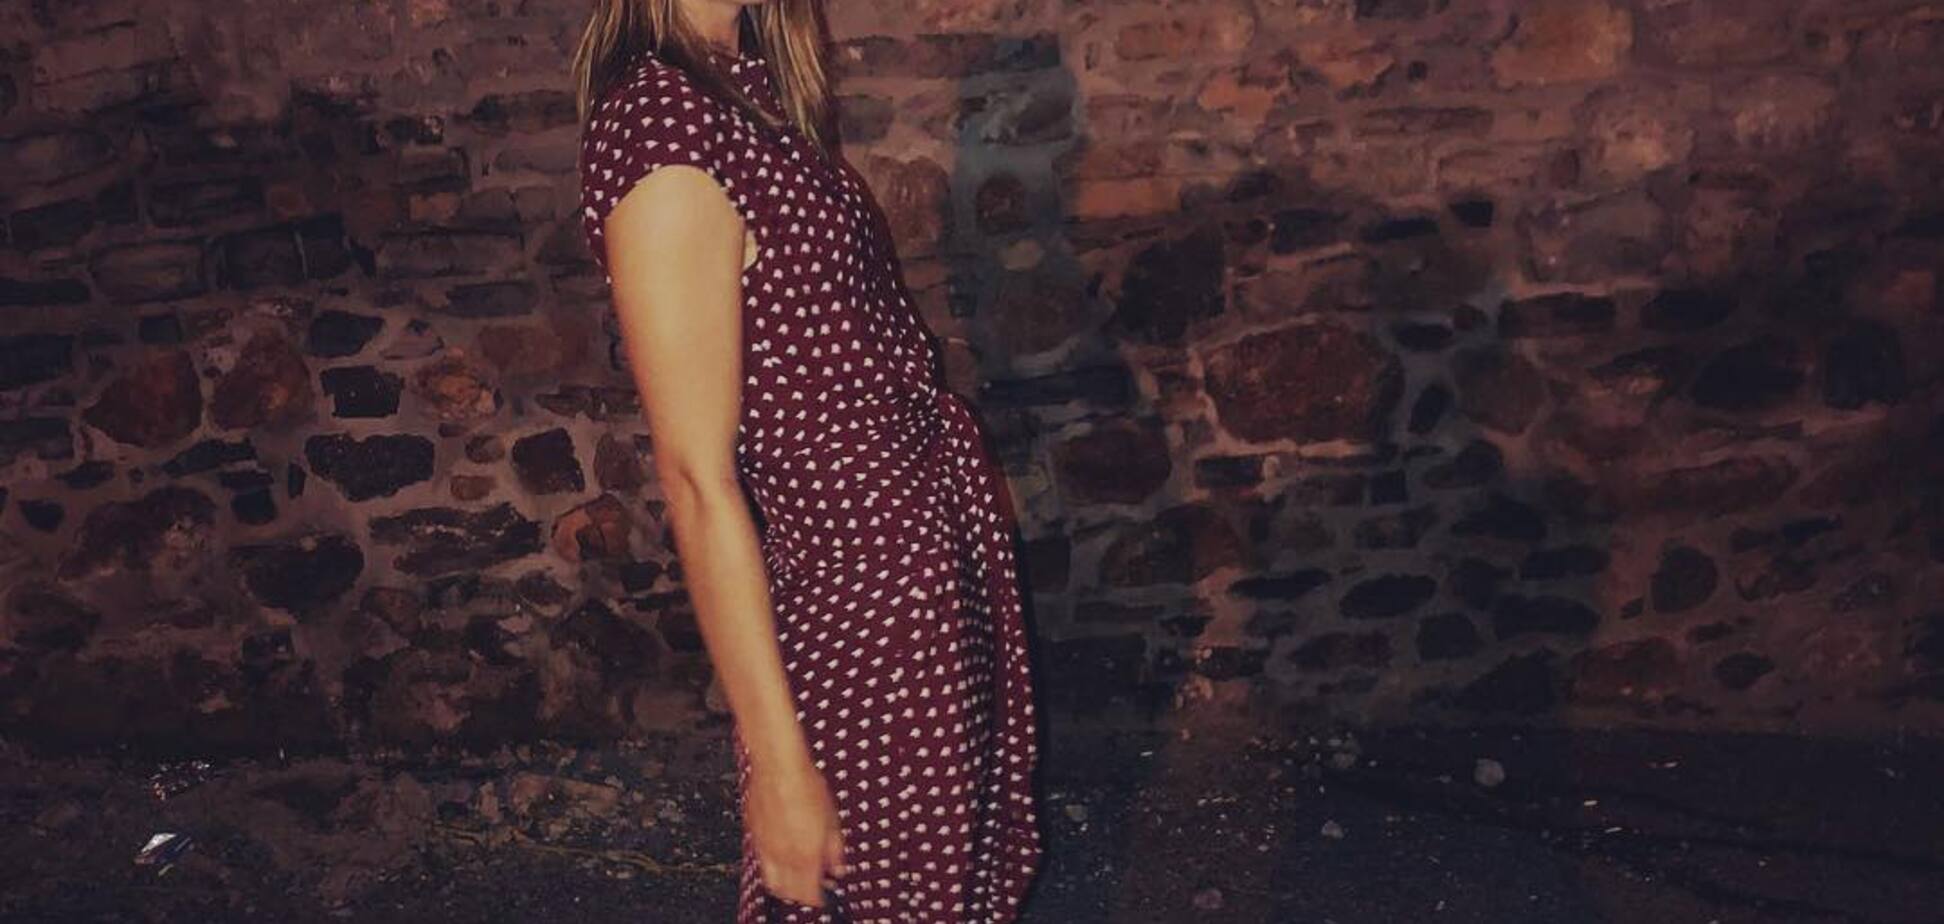 Пьяная или беременная? Шарапова вызвала переполох в Instagram провокационным фото